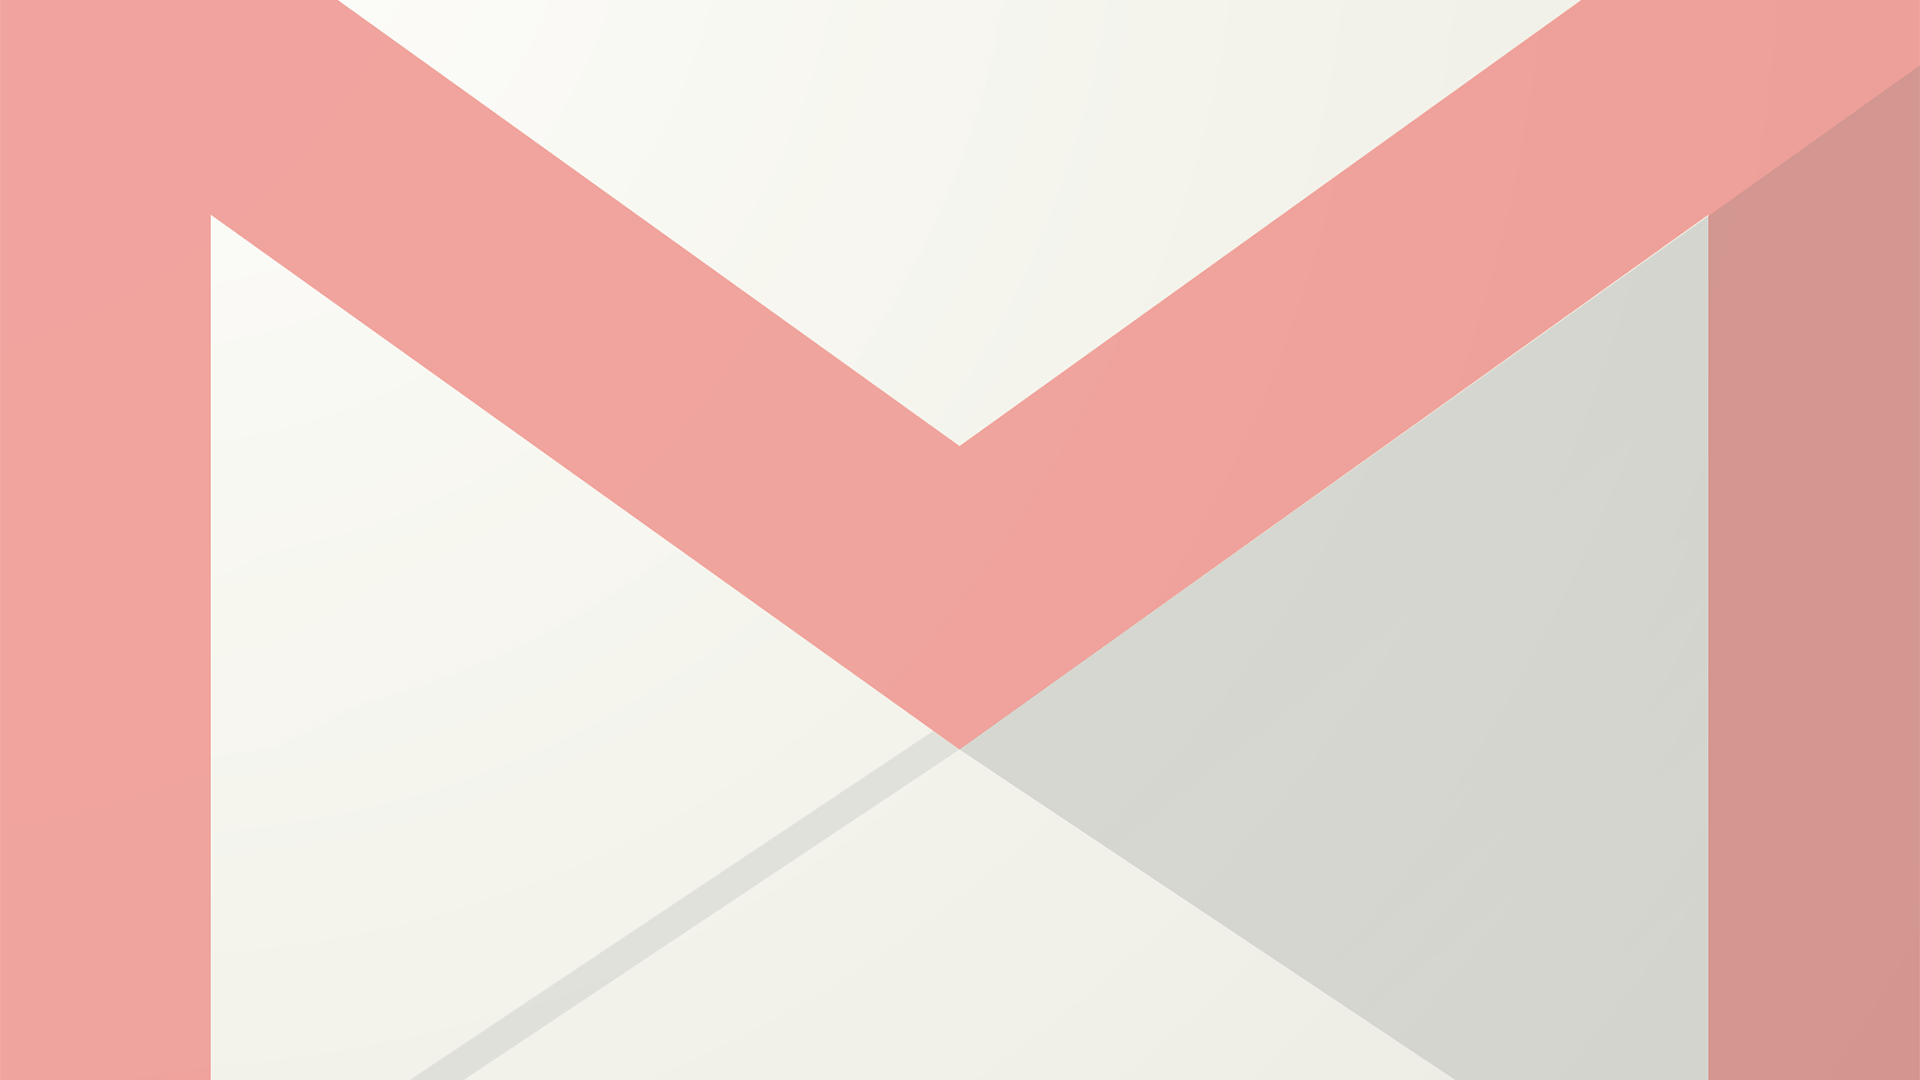 Anuncios de Gmail: un tipo de anuncio antiguo, pero una nueva incorporación a AdWords